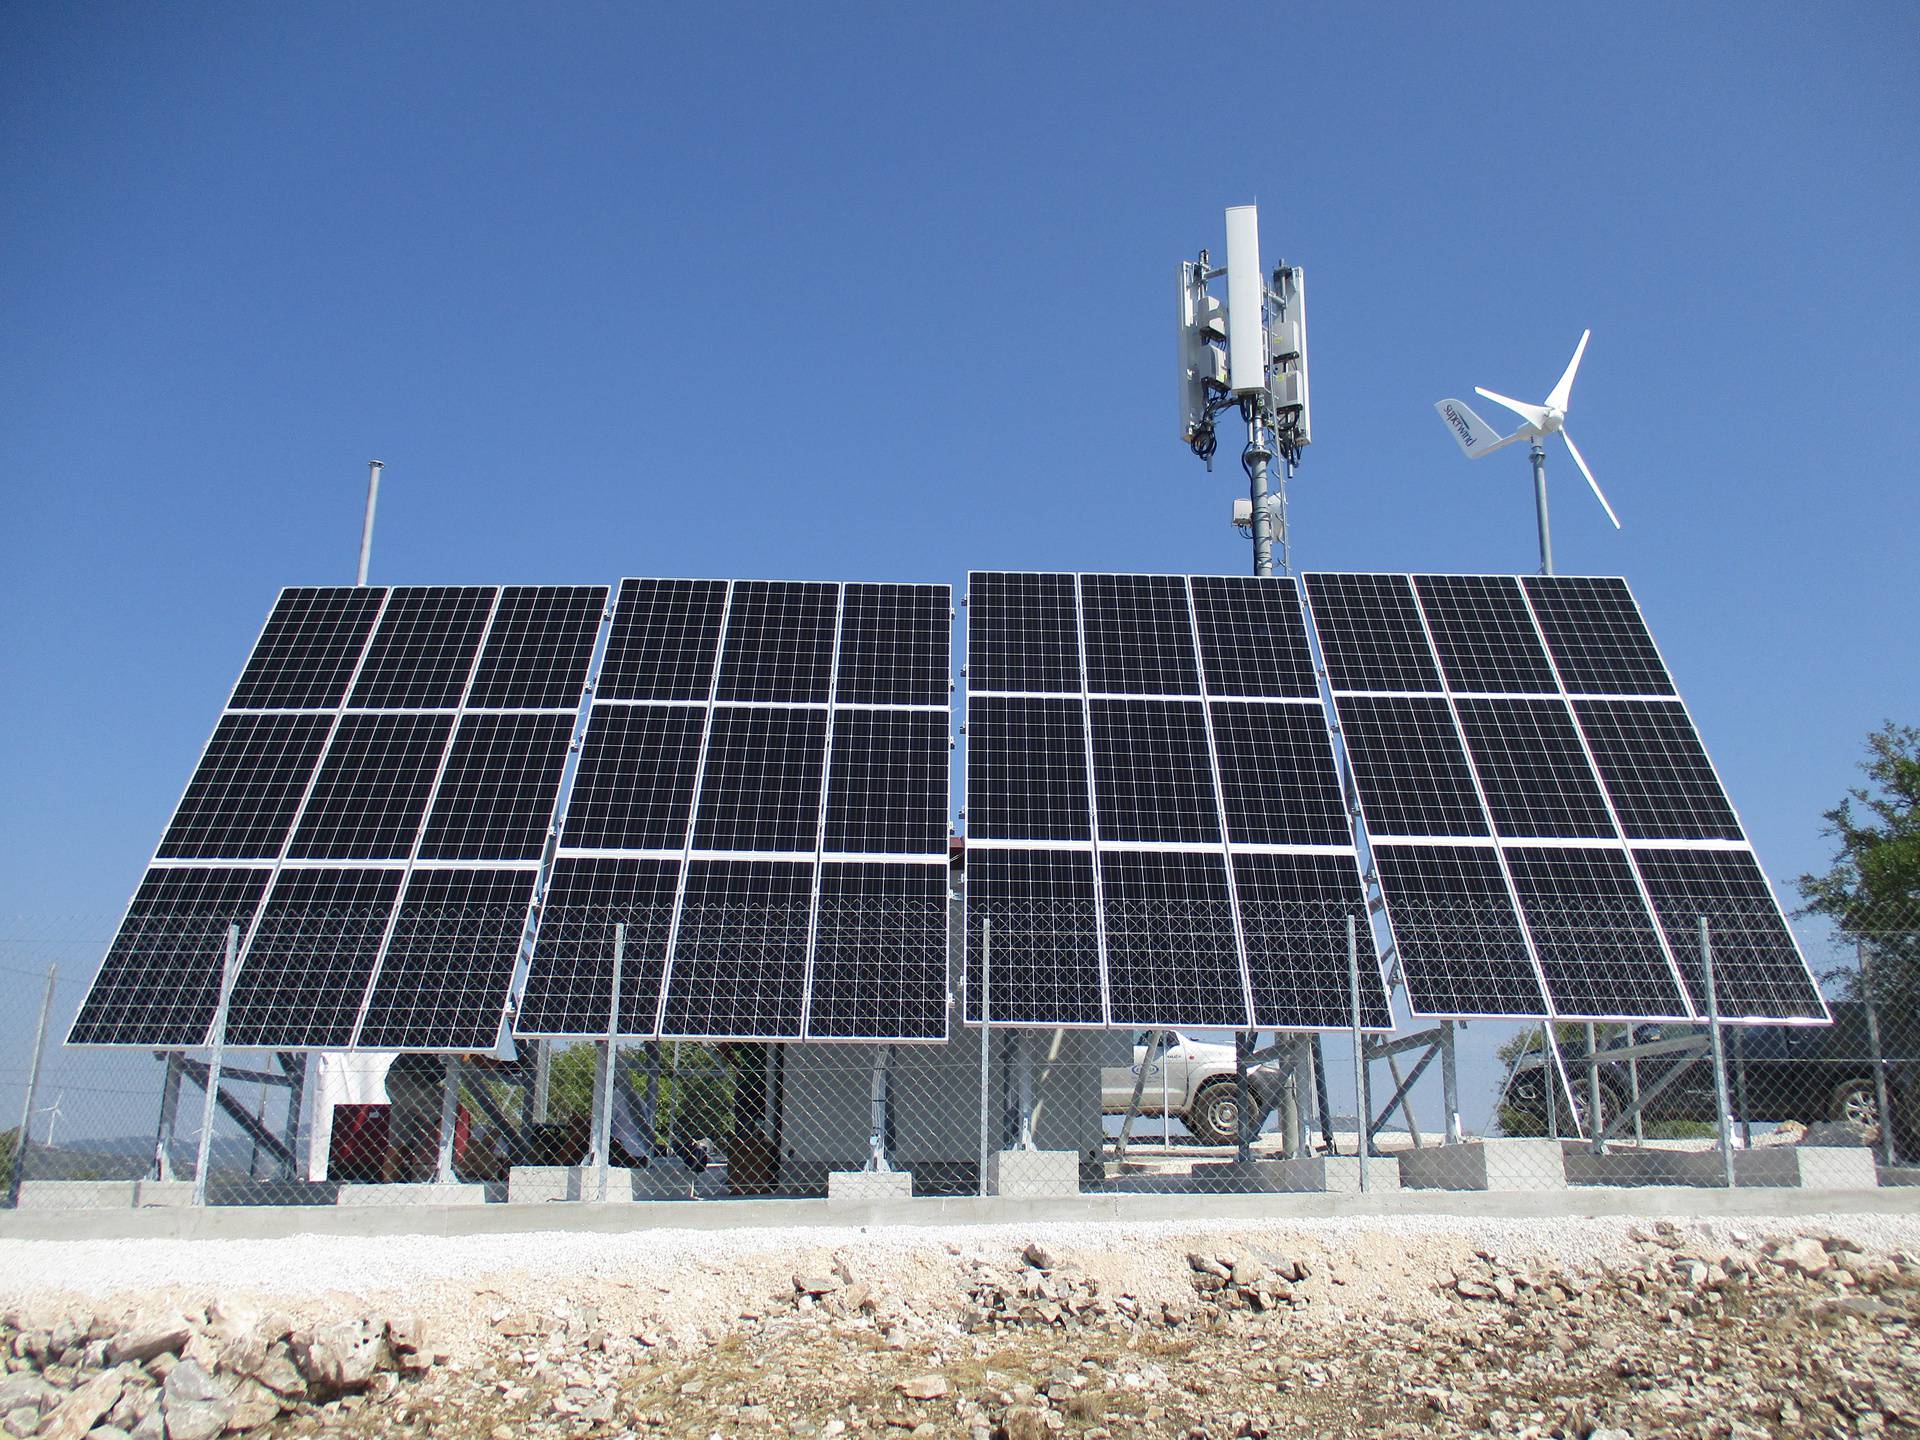 A1 ulaže 16,2 milijuna kuna u 120 solarnih elektrana kako bi smanjili svoj utjecaj na klimu